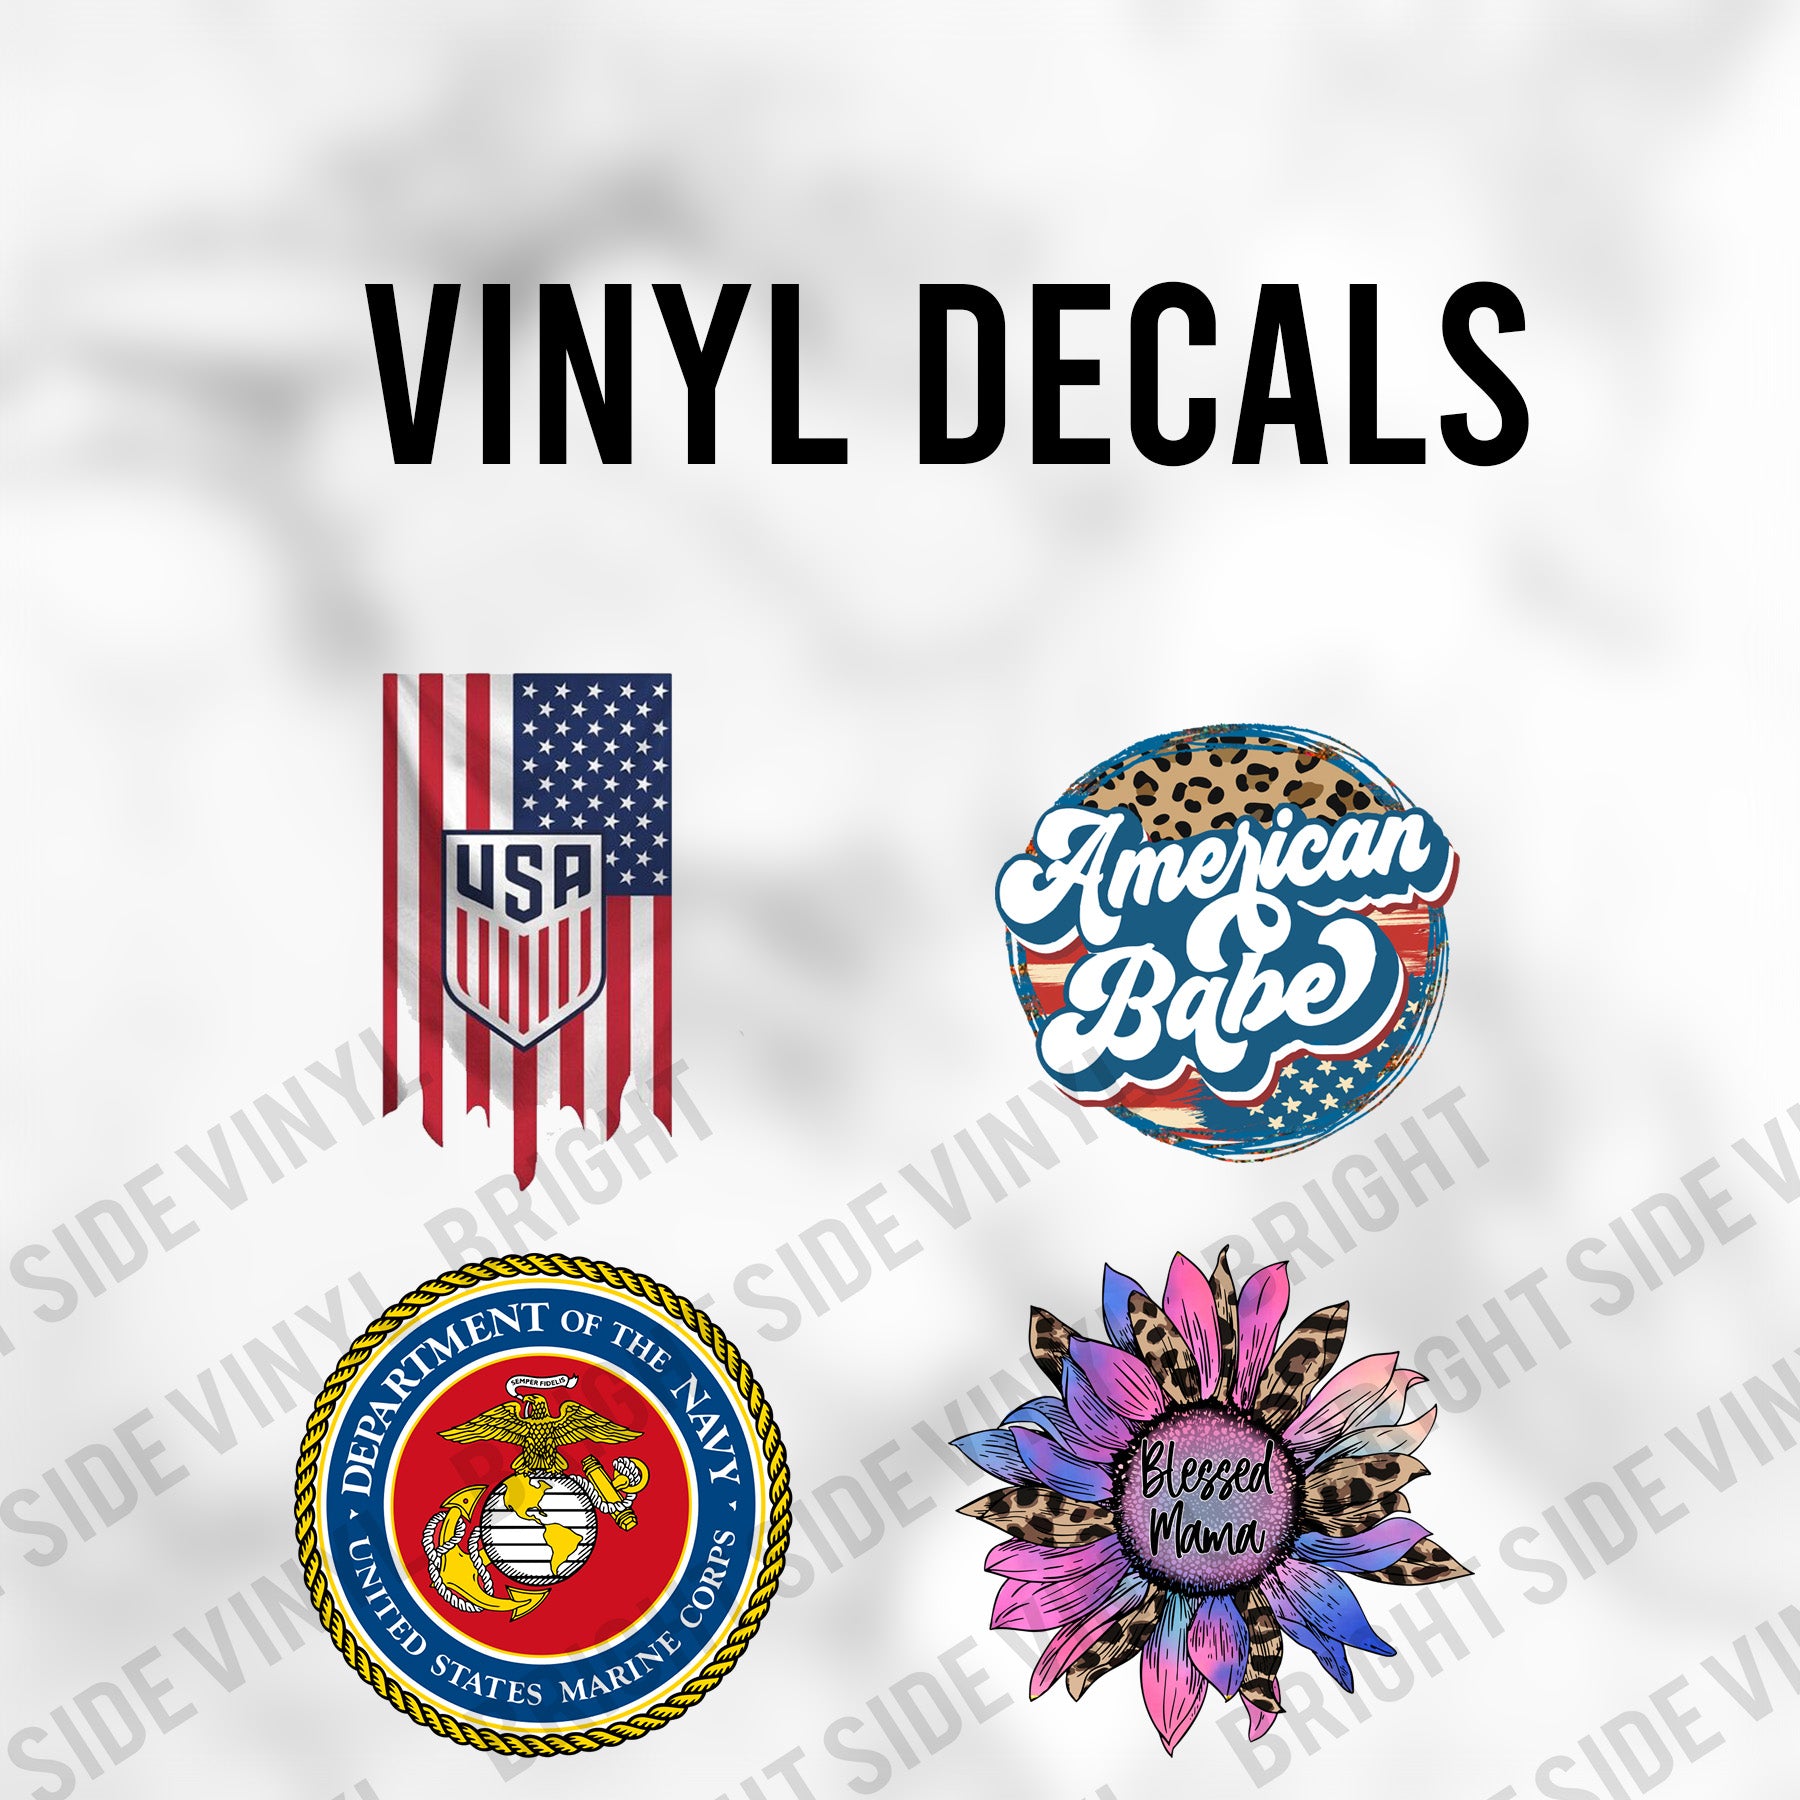 Vinyl Decals – Bright Side Vinyl